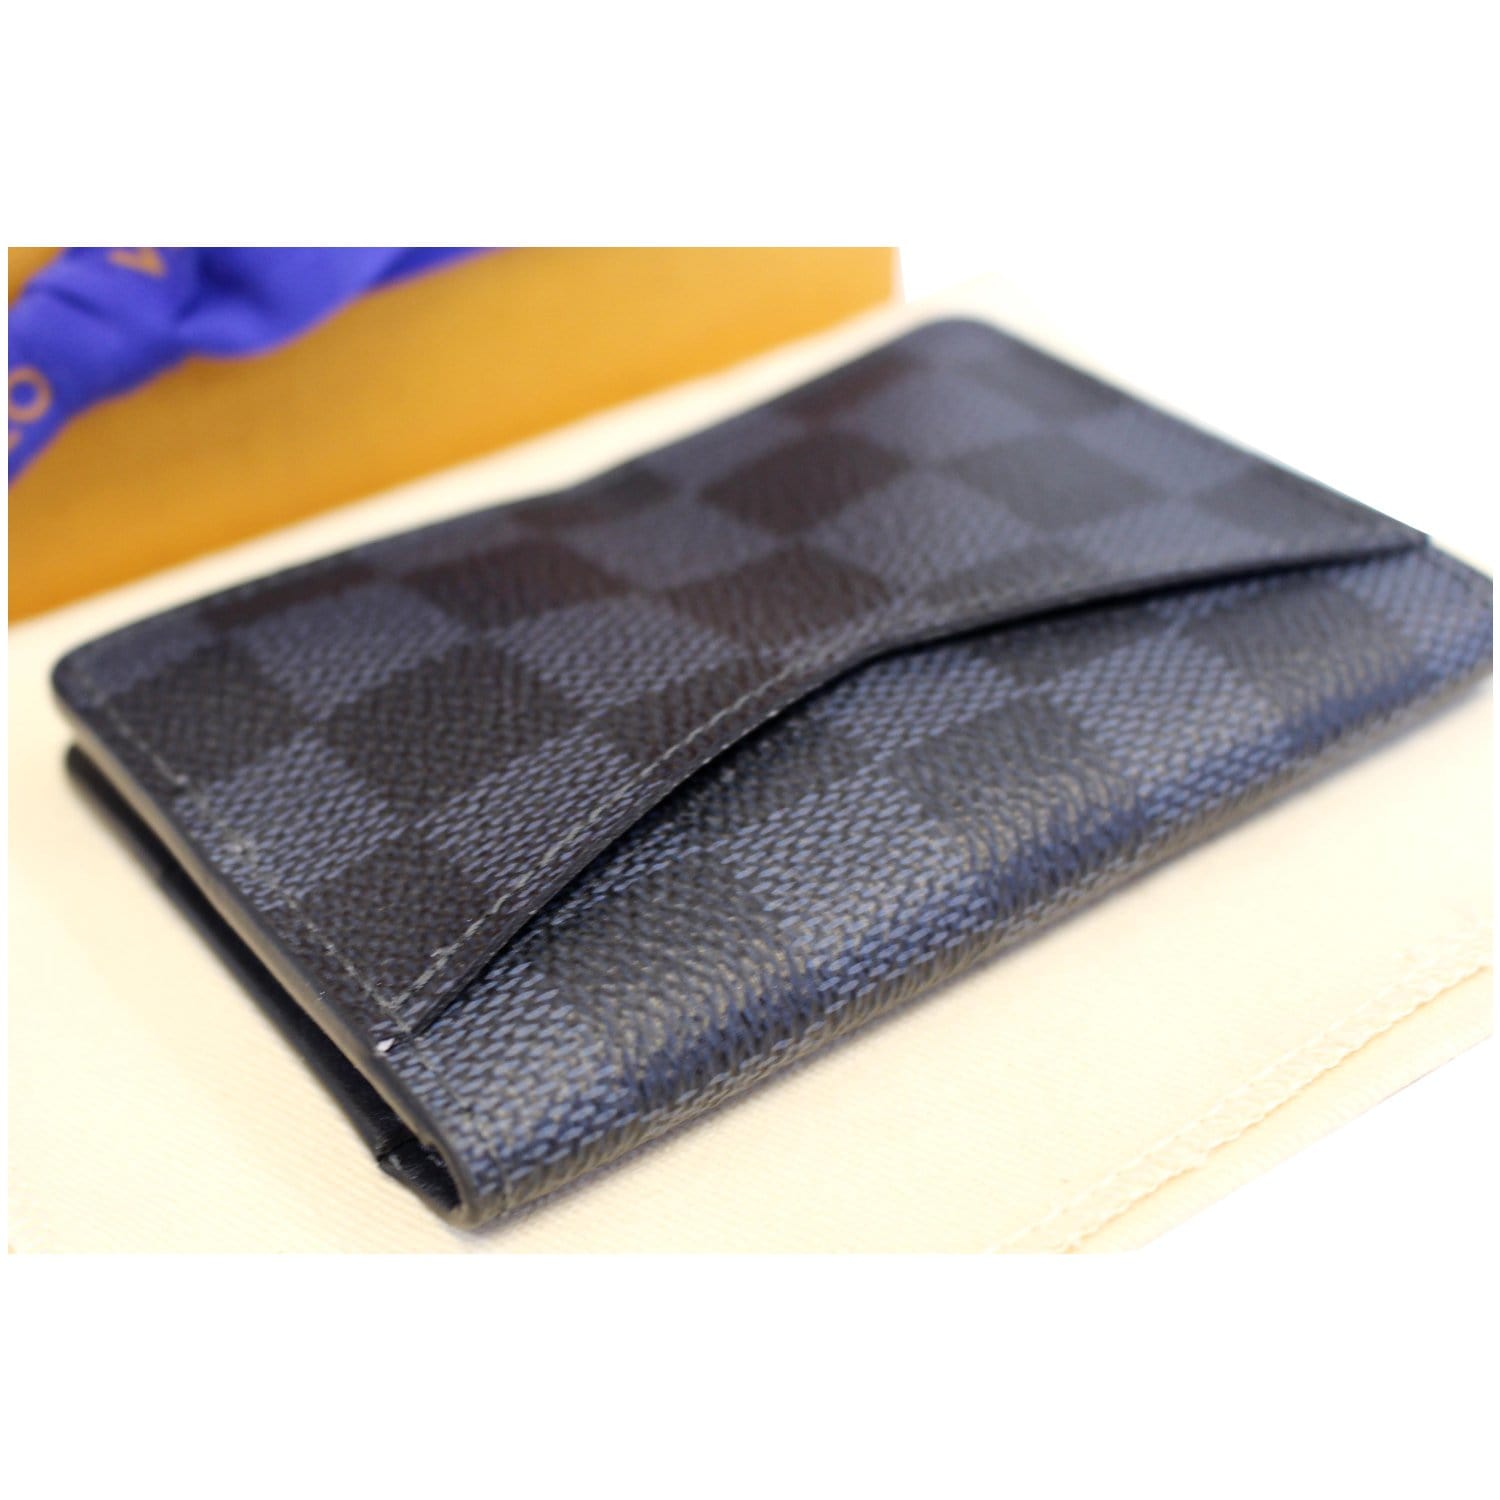 Louis Vuitton 2015 Damier Cobalt Wallet - Blue Wallets, Accessories -  LOU781611